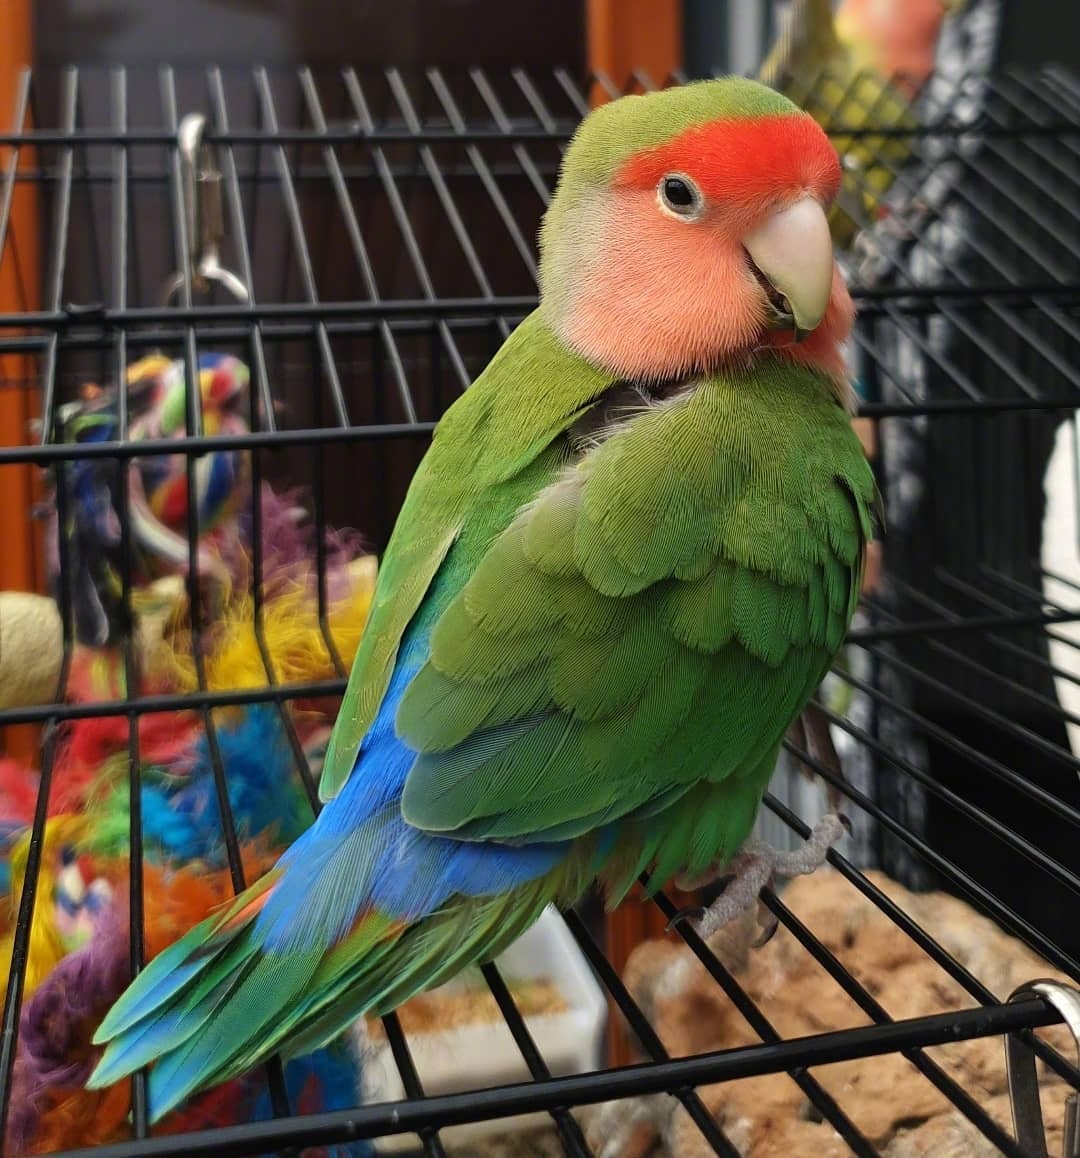 漂亮可爱的绿桃鹦鹉有趣活泼,鲜艳的羽毛太亮眼了!